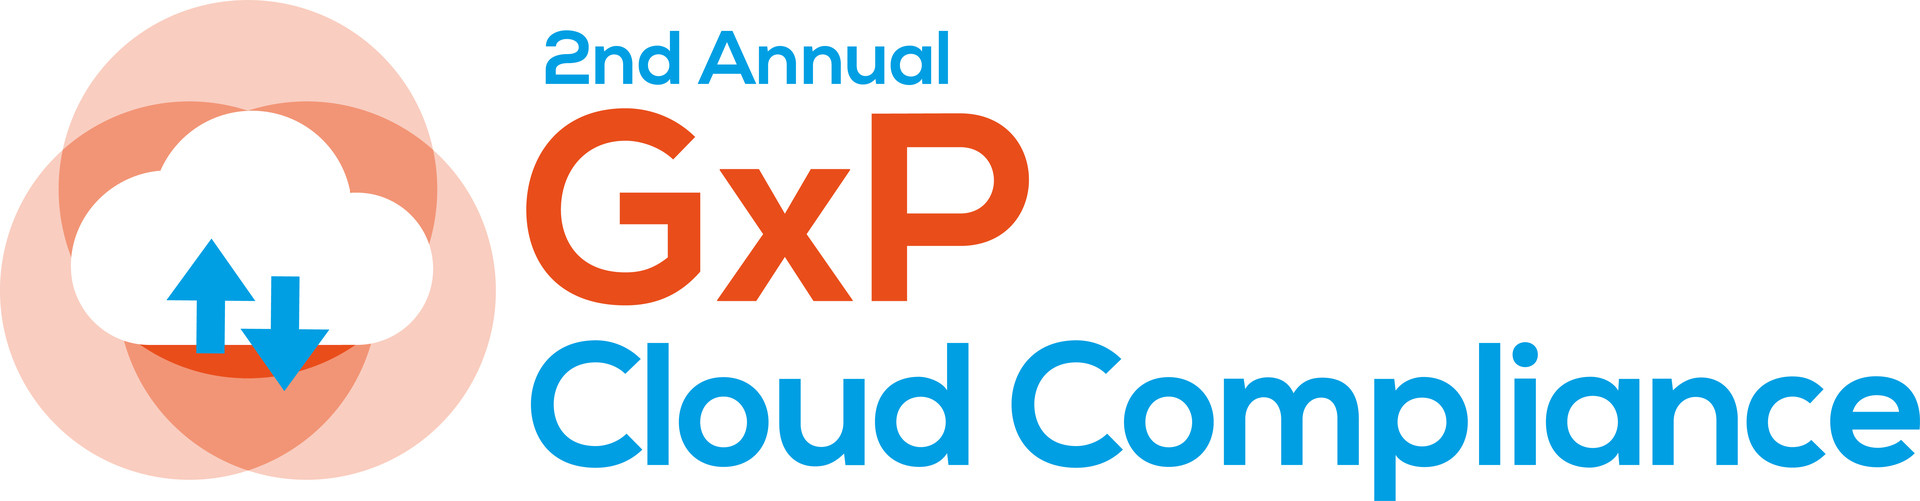 2nd GxP Cloud Compliance Summit | Virtual | July 14-15